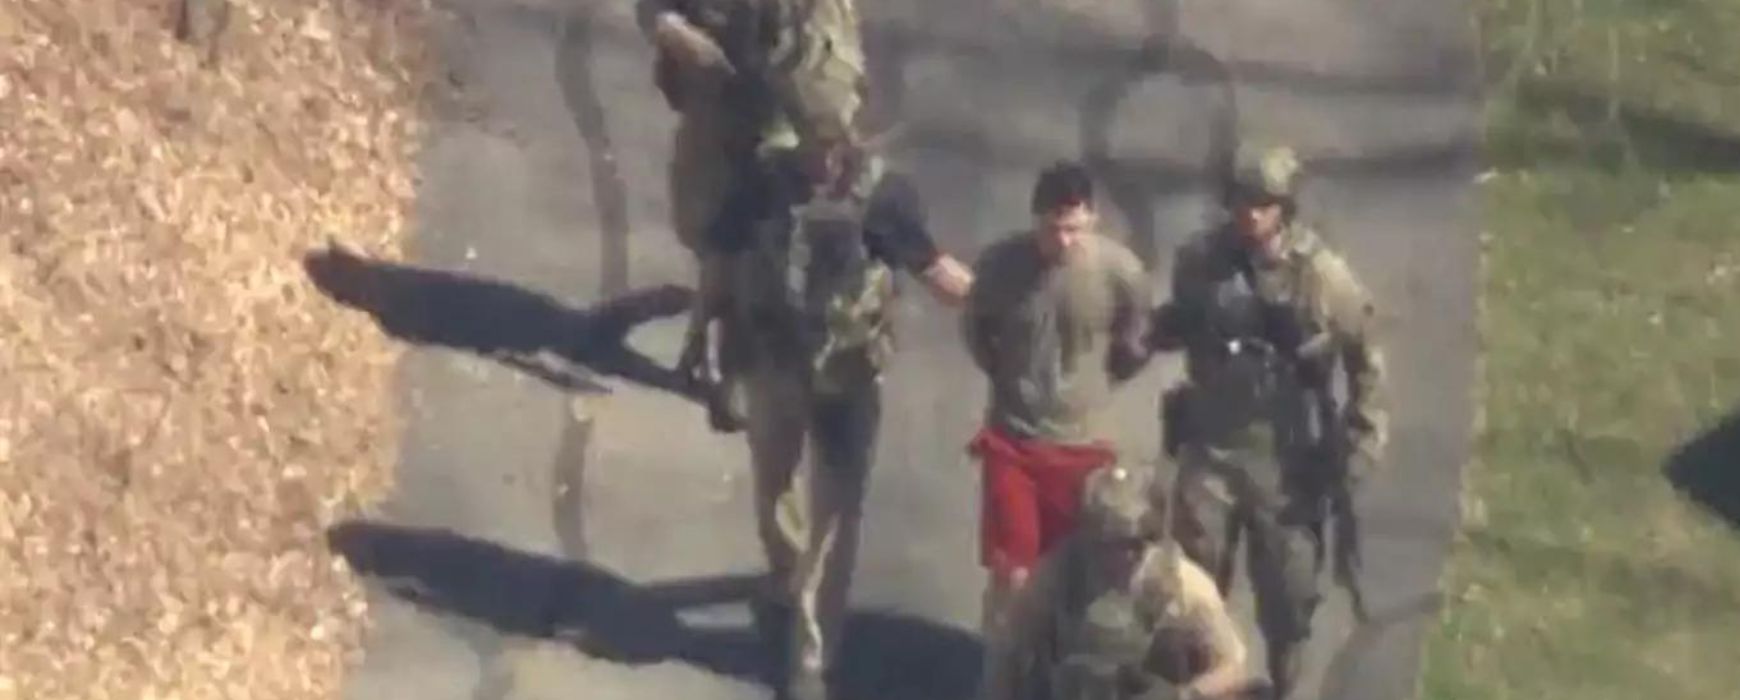 ΗΠΑ: Συνελήφθη από το FBI ο 21χρονος Εθνοφρουρός για τη διαρροή απόρρητων εγγράφων του Πενταγώνου (Video)